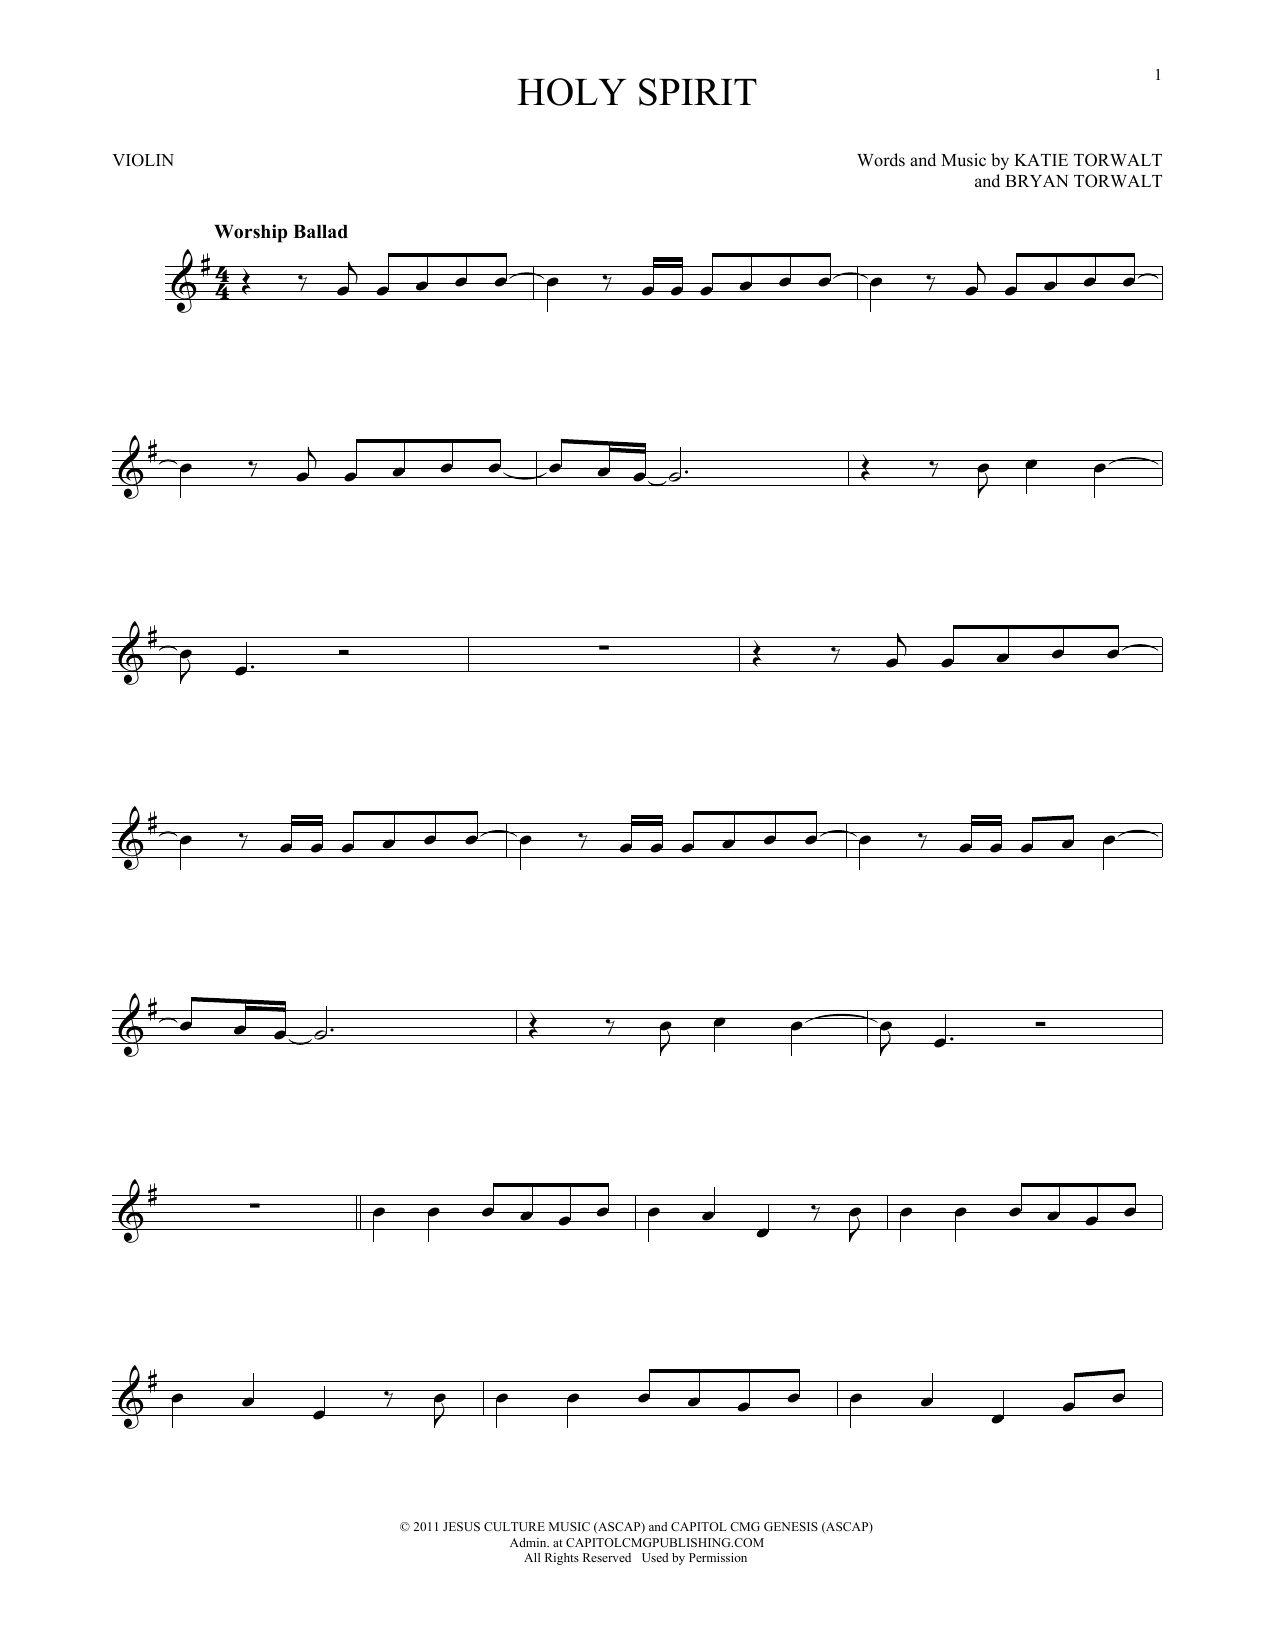 Bryan & Katie Torwalt Holy Spirit Sheet Music Notes & Chords for Lyrics & Chords - Download or Print PDF